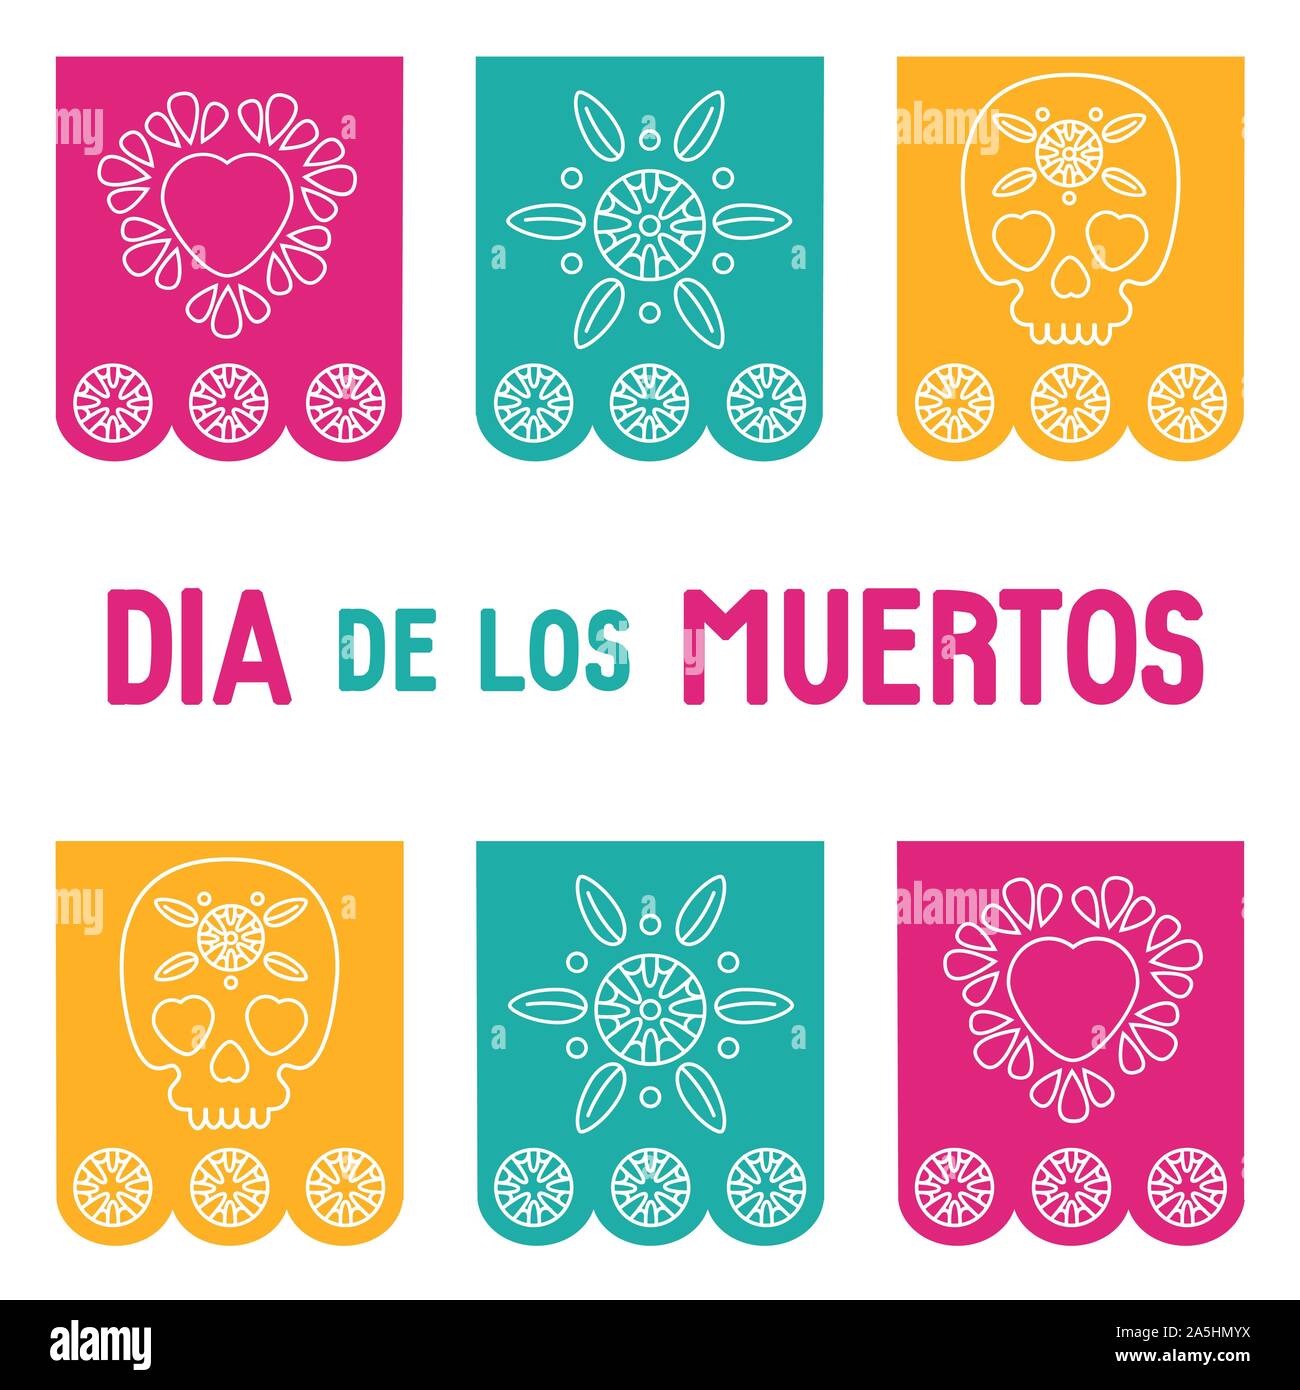 Tag der Toten, Dia de los Muertos Hintergrund, Quadrat Banner, Grußkarte mit mexikanischen Bunting, Sugar Skull oder Calavera, Blumen und Text. Stock Vektor